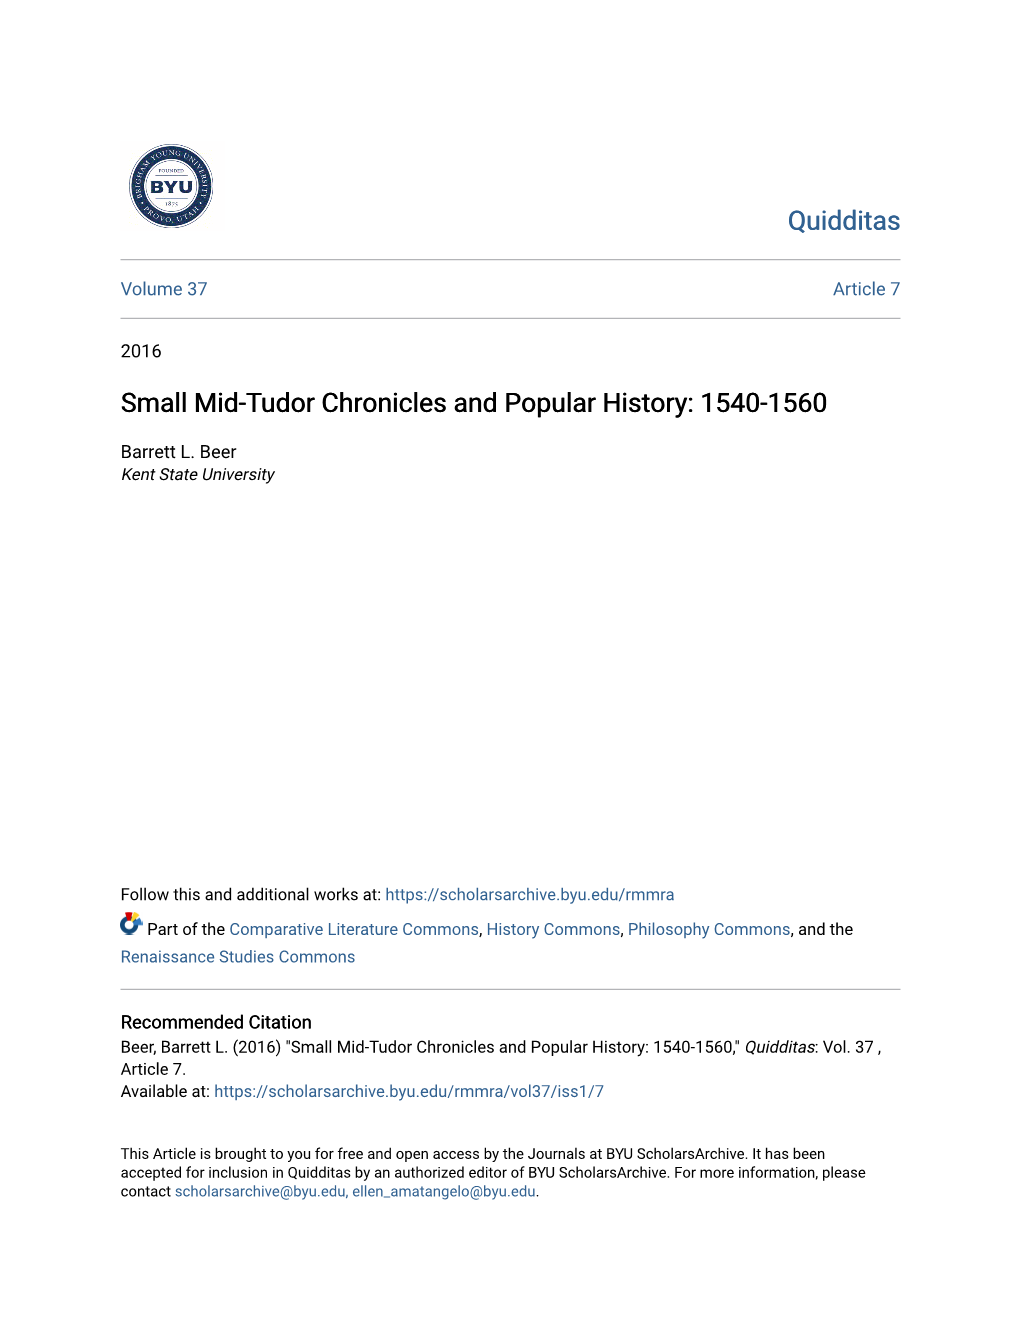 Small Mid-Tudor Chronicles and Popular History: 1540-1560